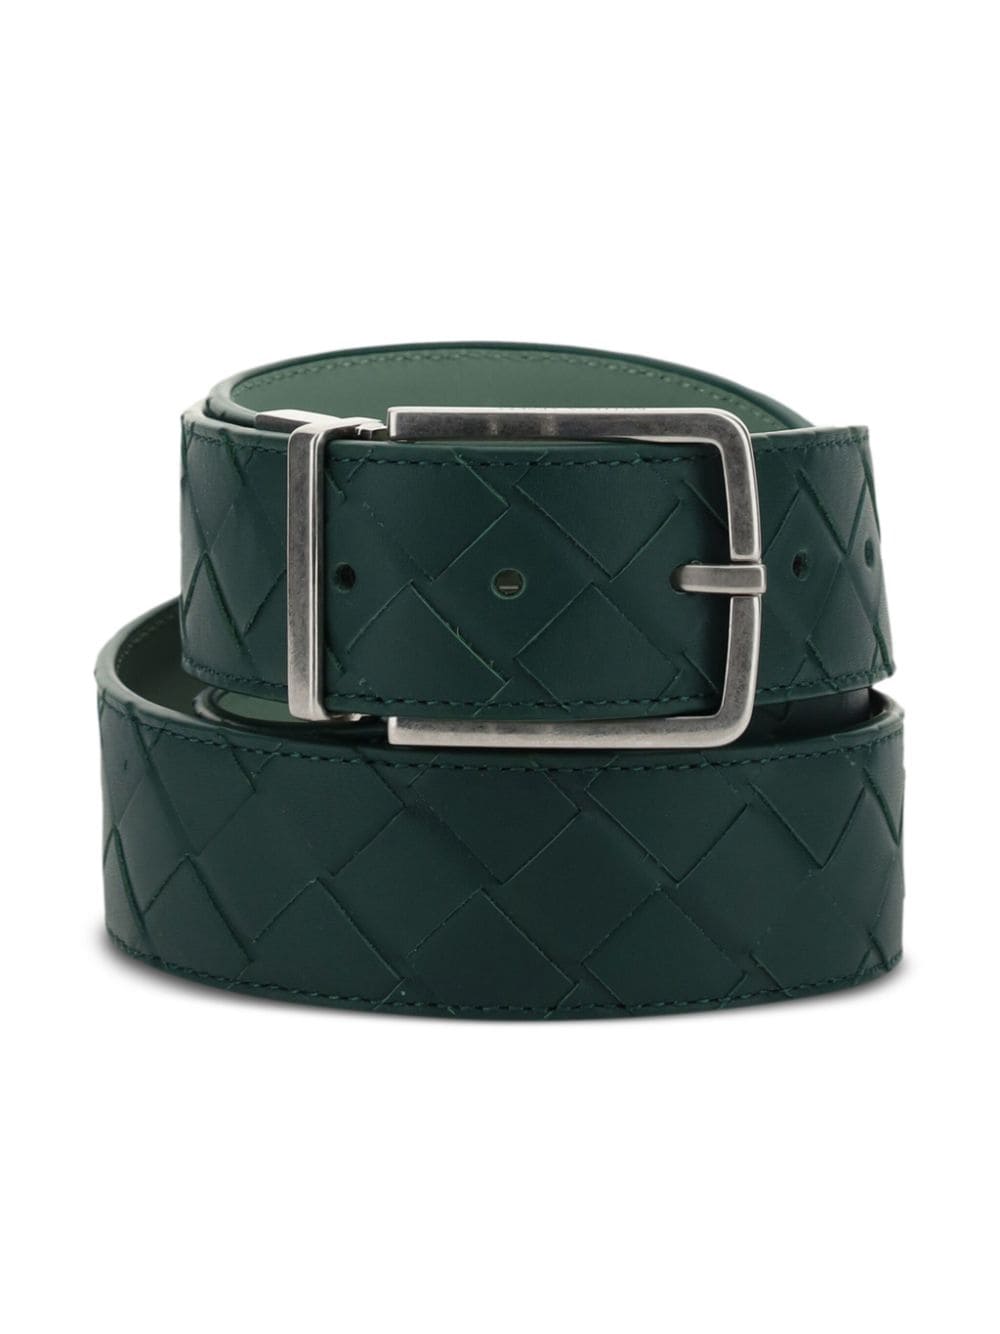 Bottega Veneta Intrecciato leather belt - Groen